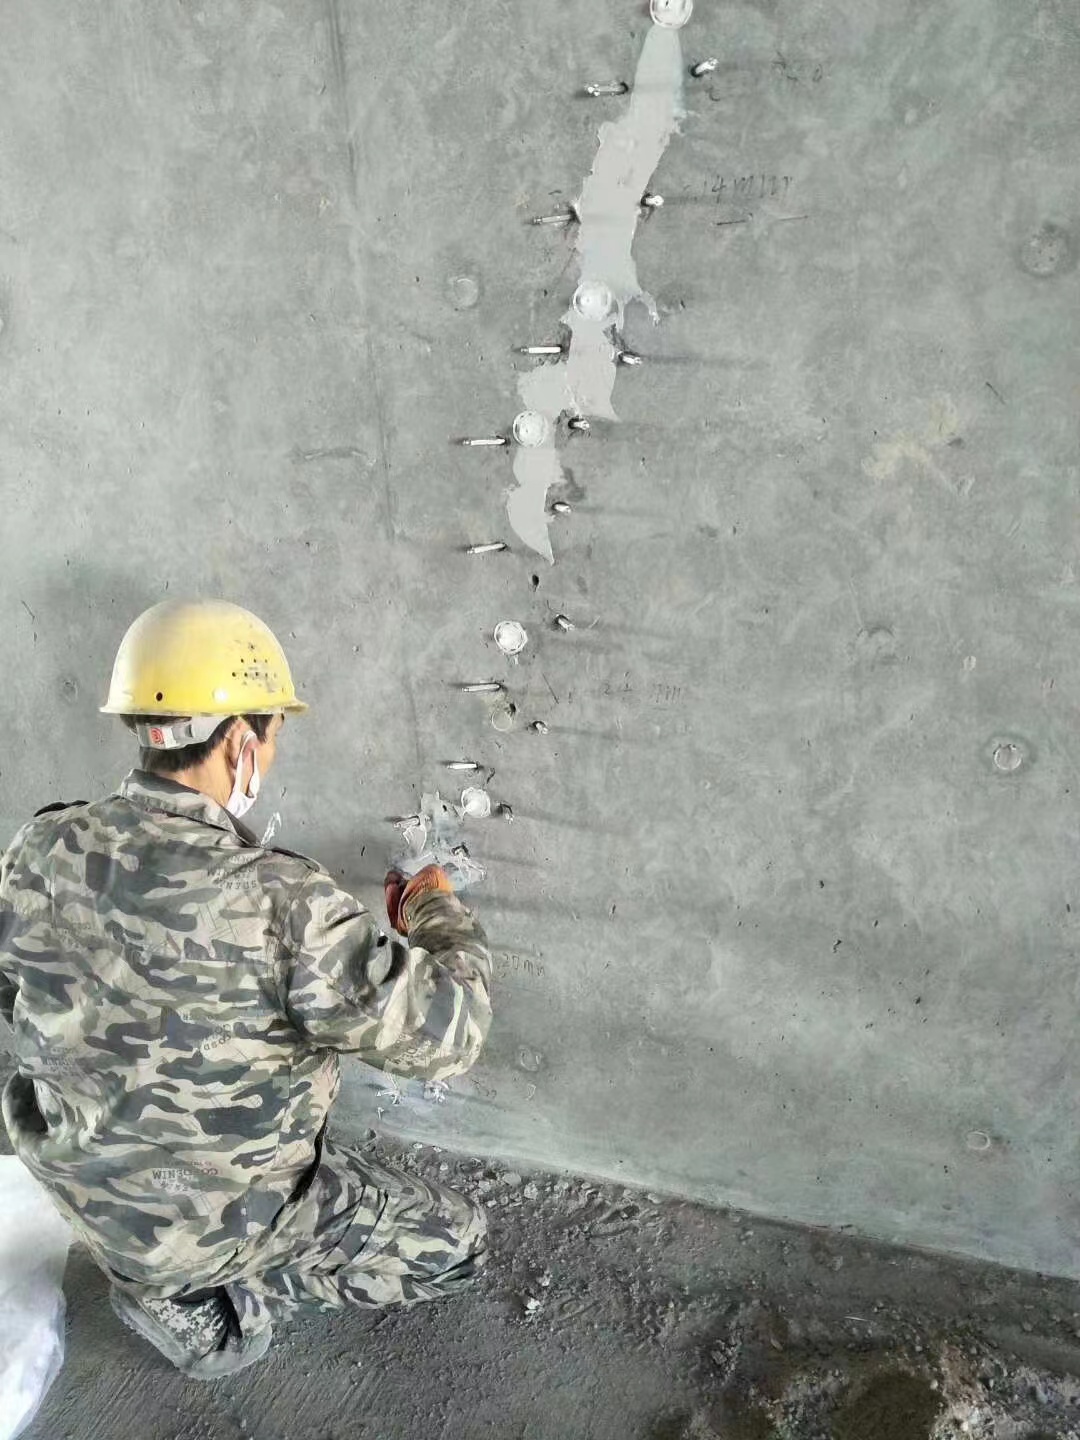 袁州混凝土楼板裂缝加固施工的方案